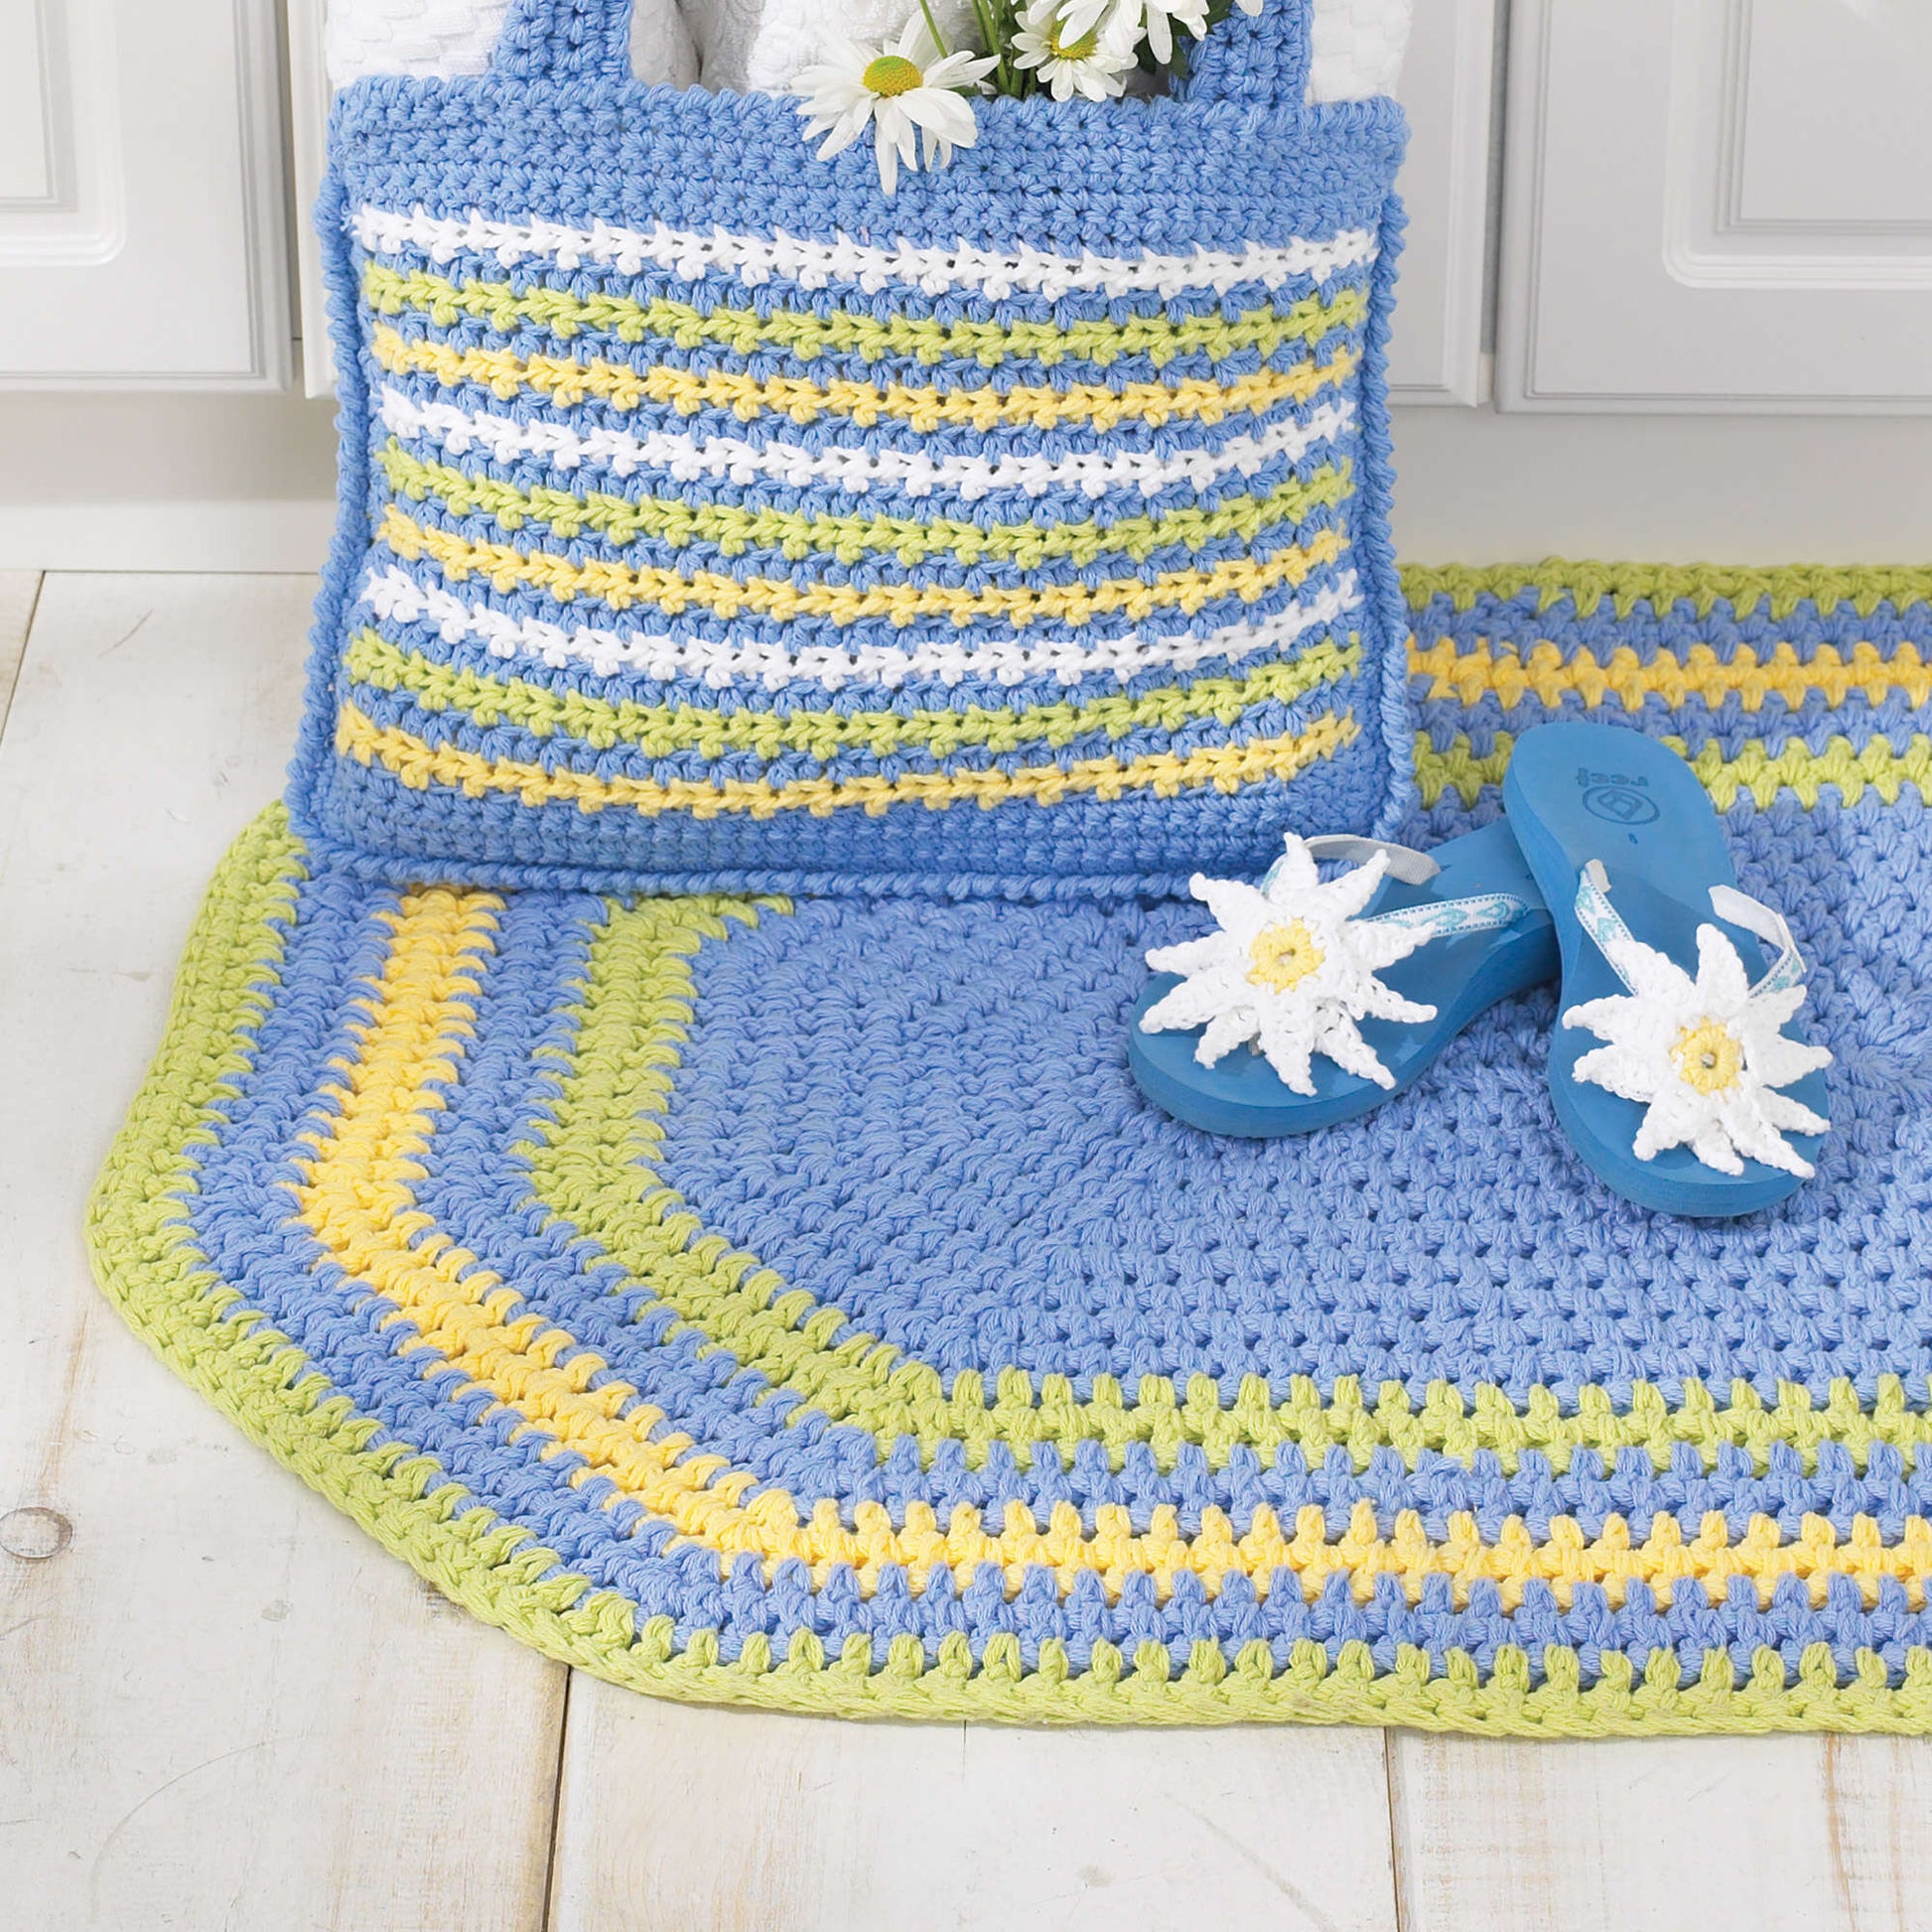 Free Bernat Oval Rug Crochet Pattern